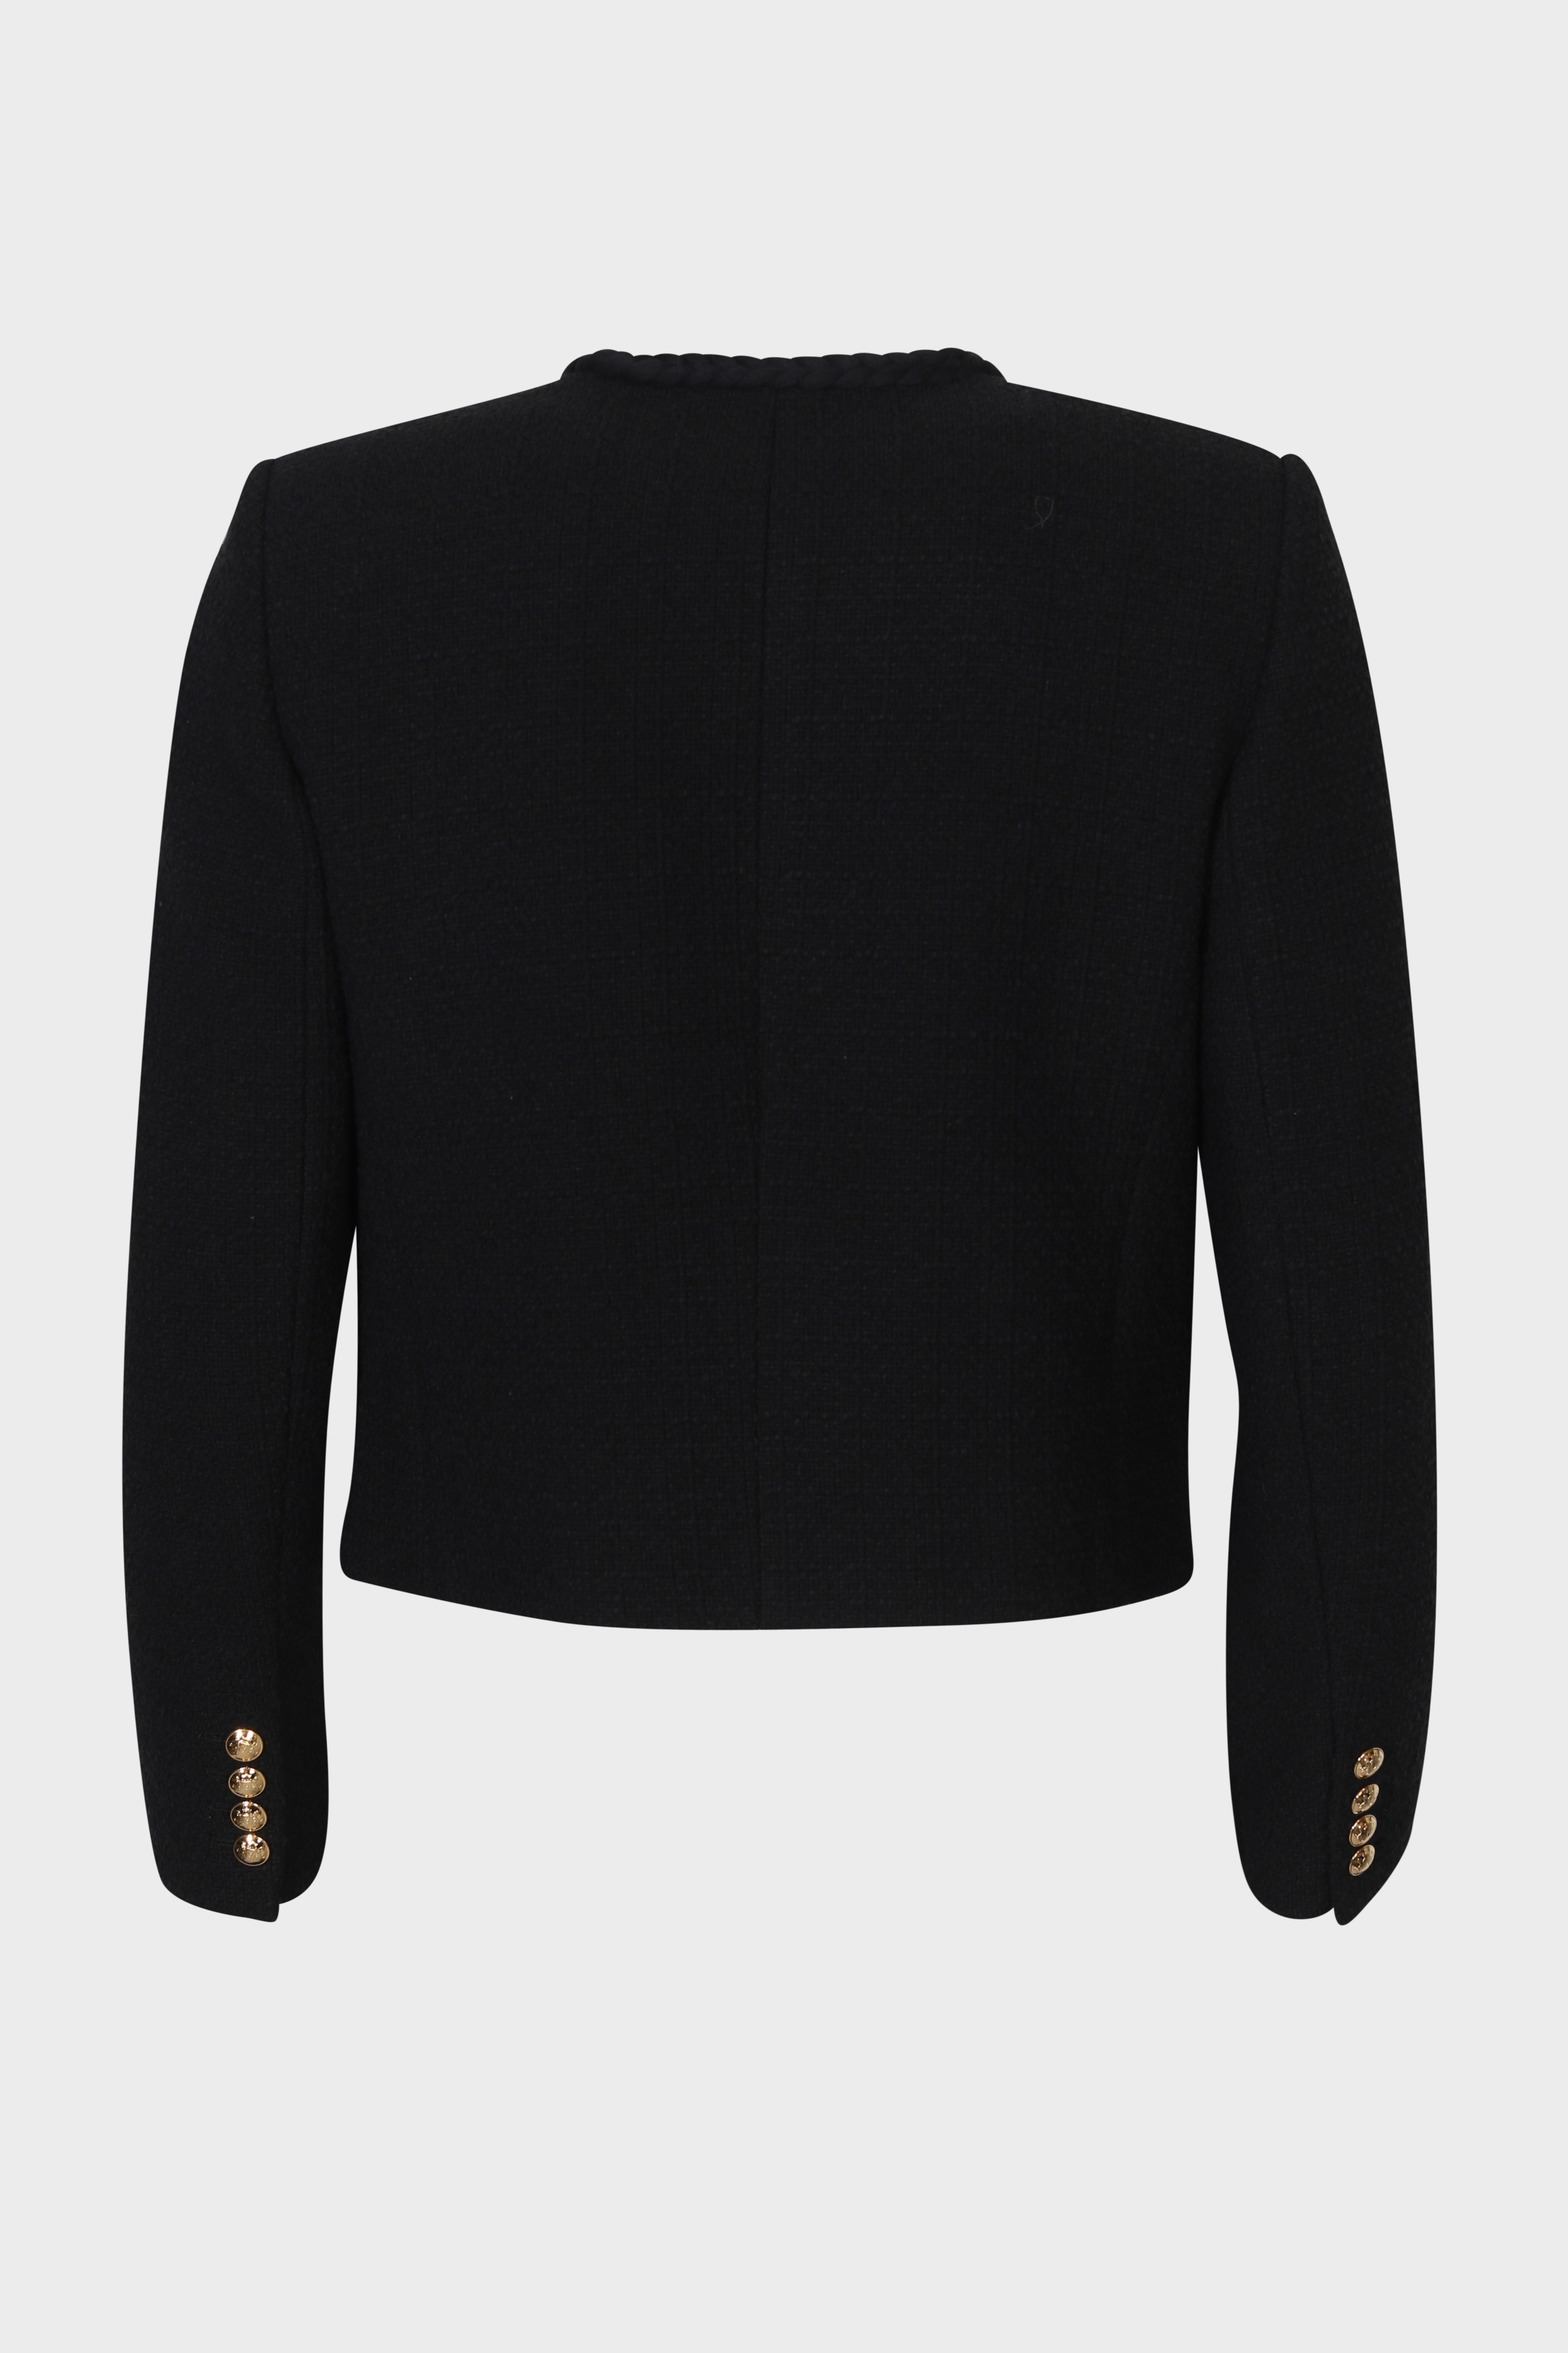 NILI LOTAN Iman Cropped Jacket in Black 8 / XL